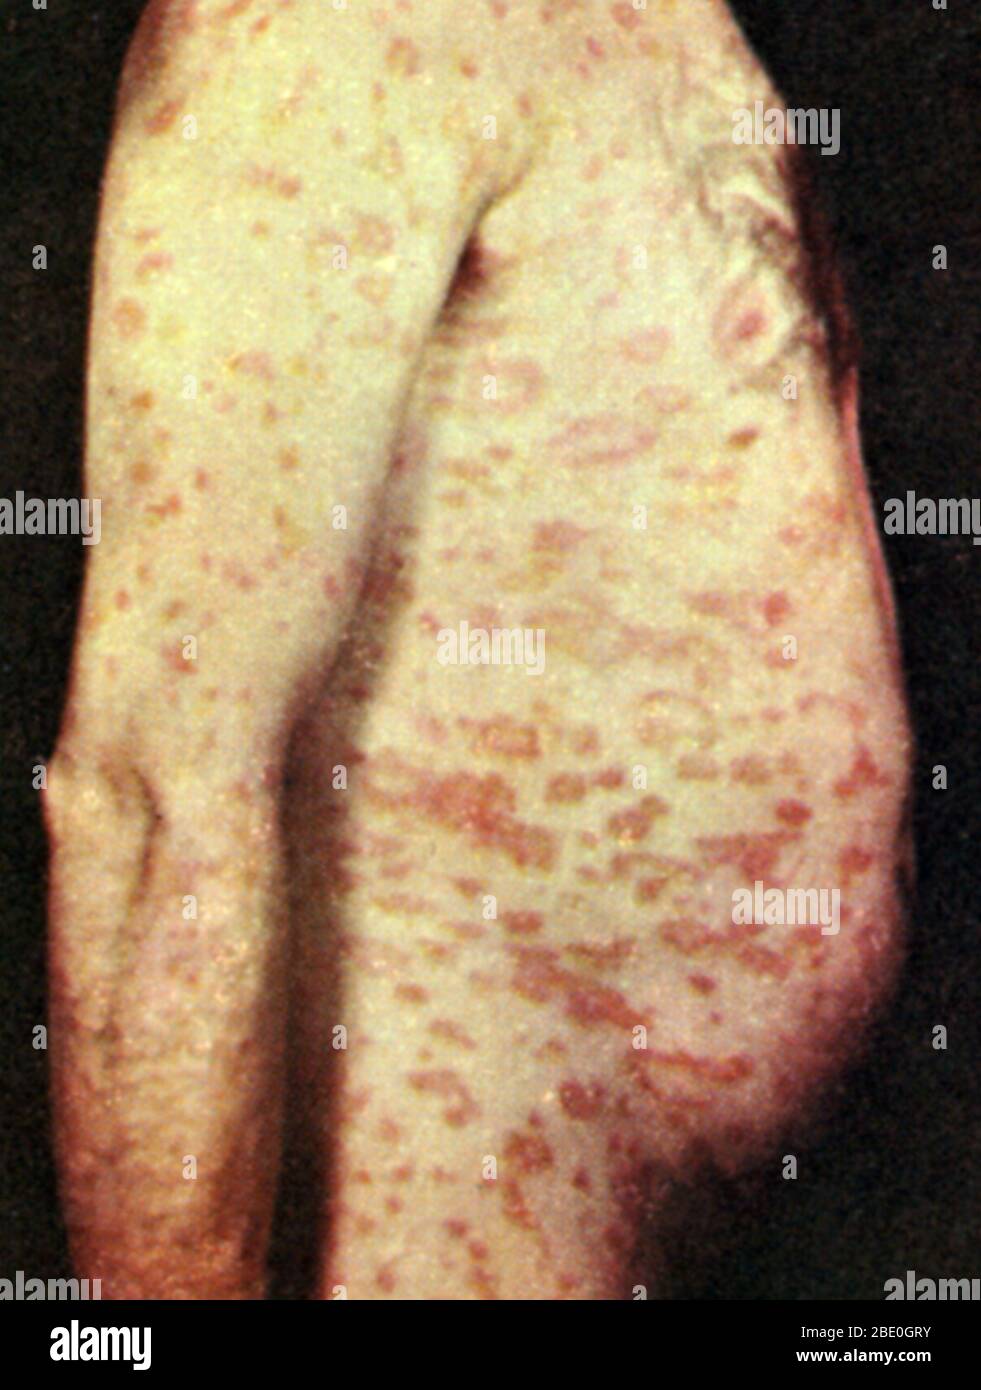 Pityriasis rosea, ein häufiger akuter und gutartiger Hautausschlag, der sich über den Körper ausbreitet und durch juckende Läsionen gekennzeichnet ist. Stockfoto